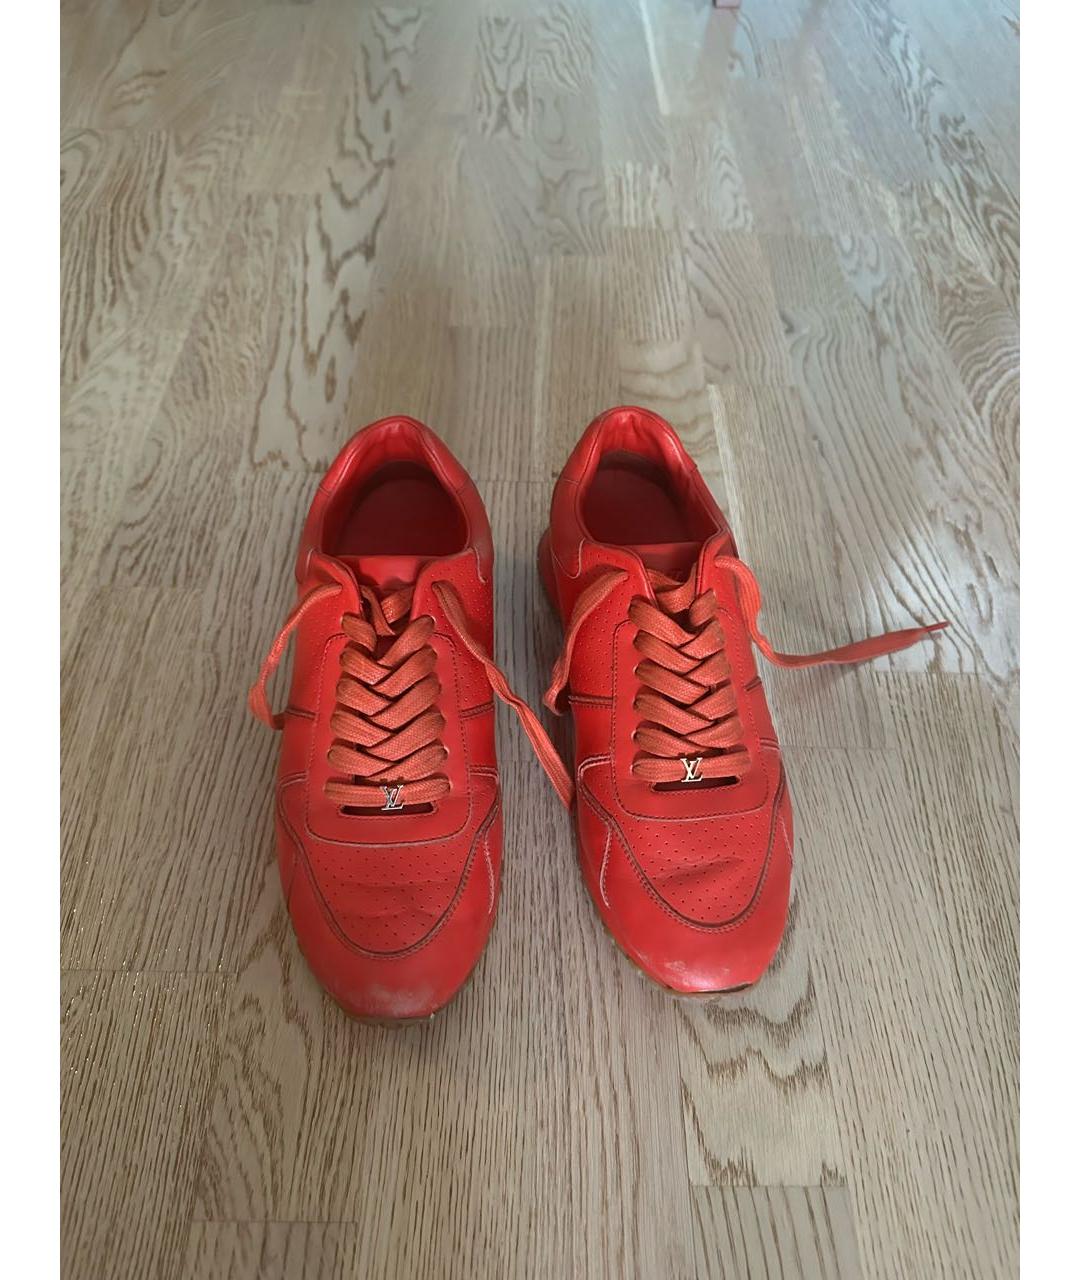 LOUIS VUITTON PRE-OWNED Красные кожаные низкие кроссовки / кеды, фото 2